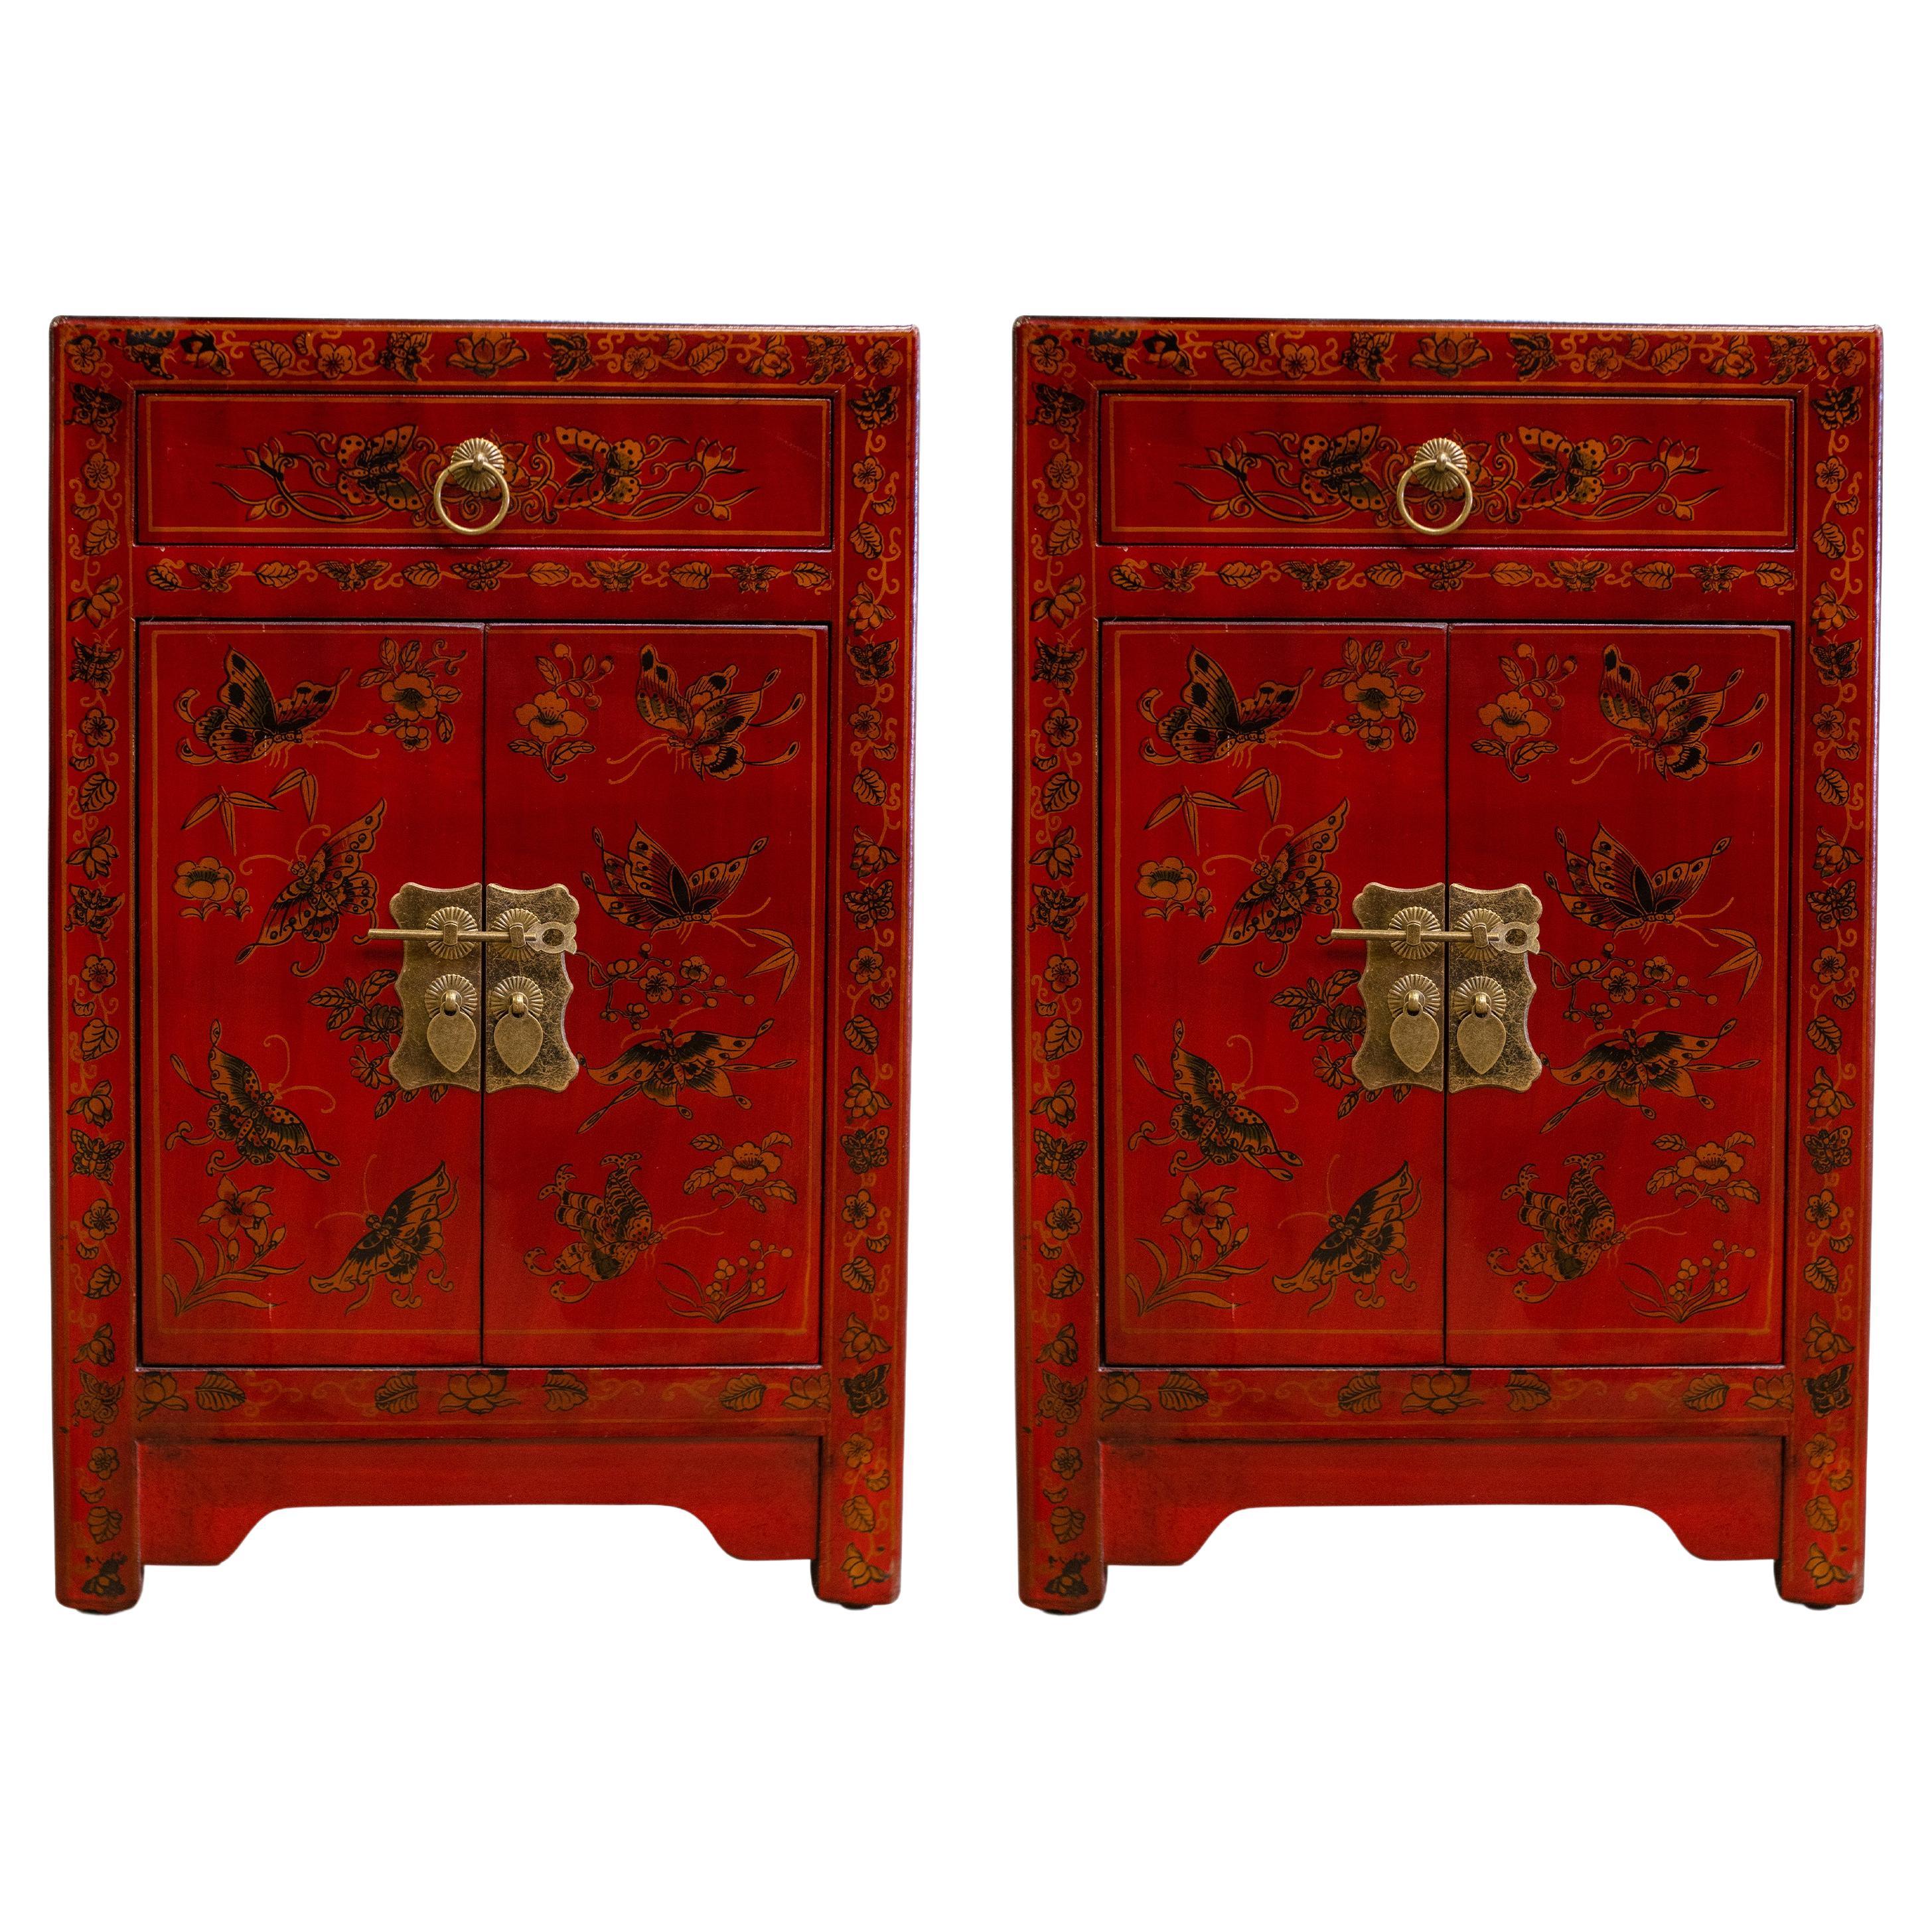 Zwei chinesische rot lackierte Nachttische mit Schubladen aus dem 20. Jahrhundert mit exquisiten dekorativen Figurenszenen 

Zusätzliche Abmessungen 
Höhe der Schublade 5cm
Höhe des Schrankes mit Tür 34,5 cm 
